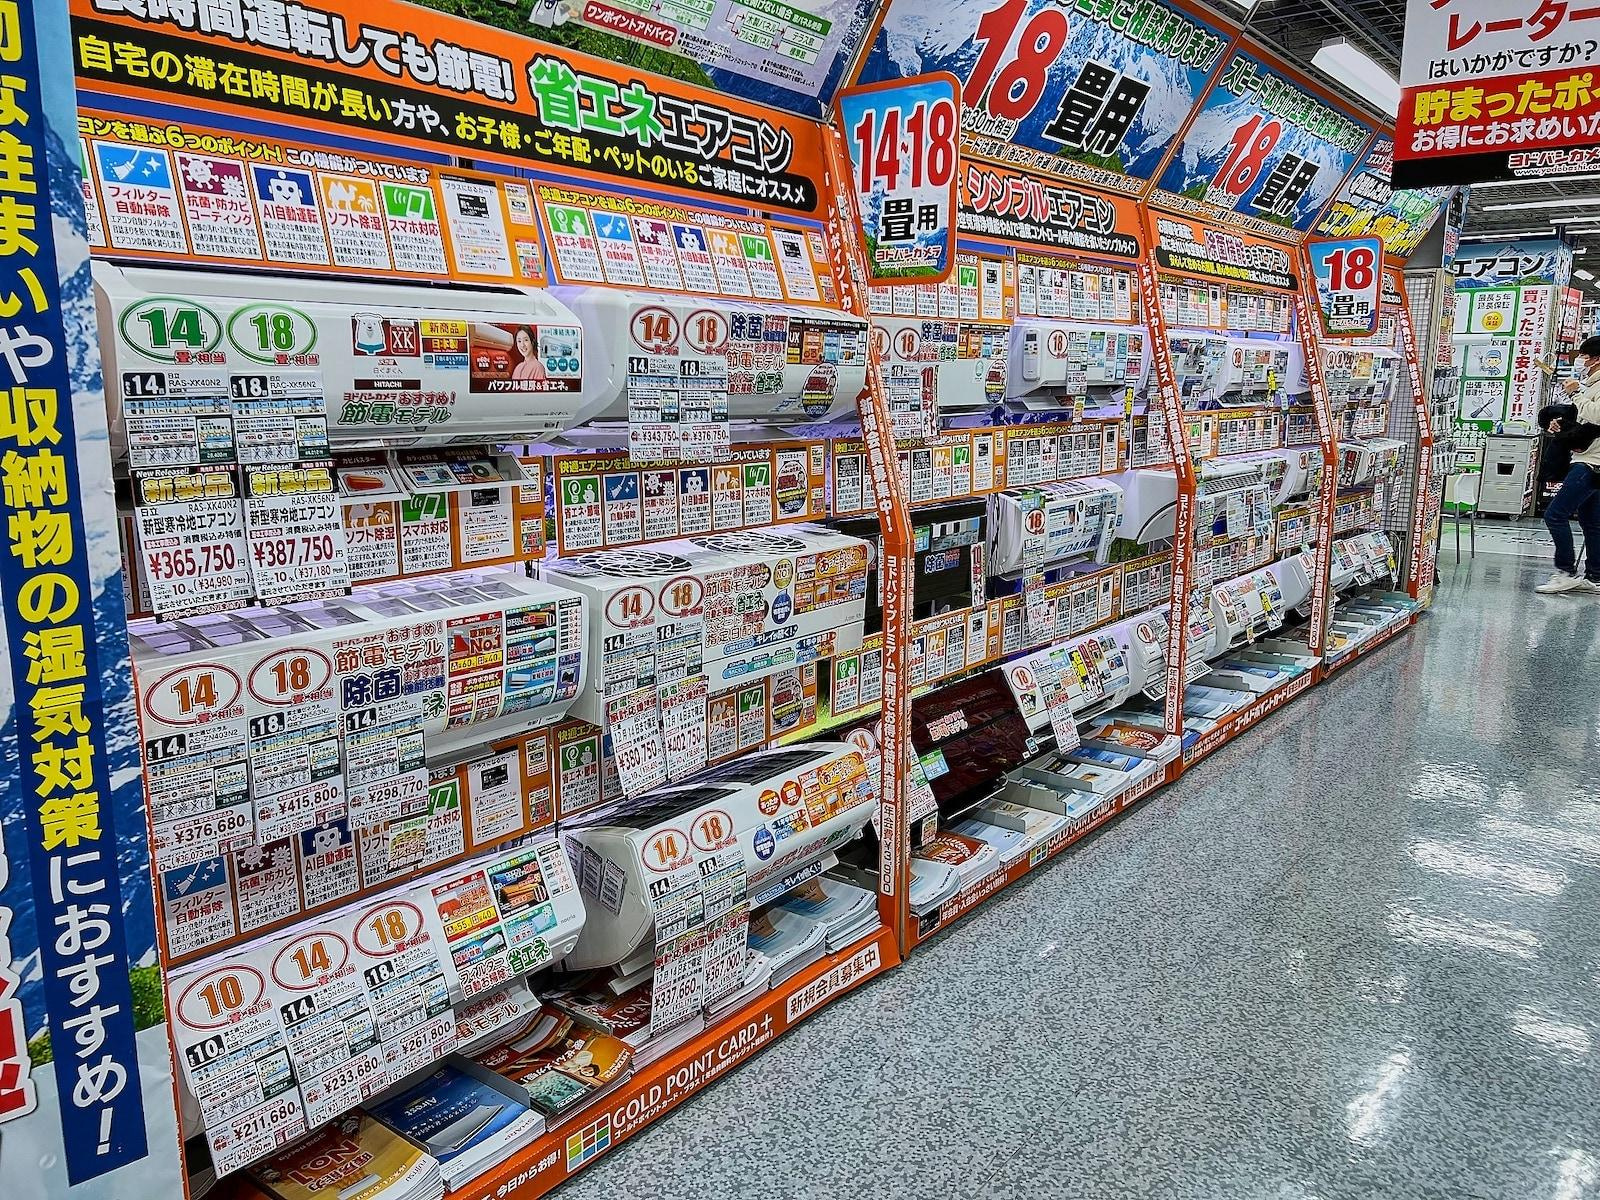 Японский шоппинг выглядит местами очень жестко, держитесь. У них считается, что чем больше выбора — тем лучше. С непривычки вполне может разболеться голова